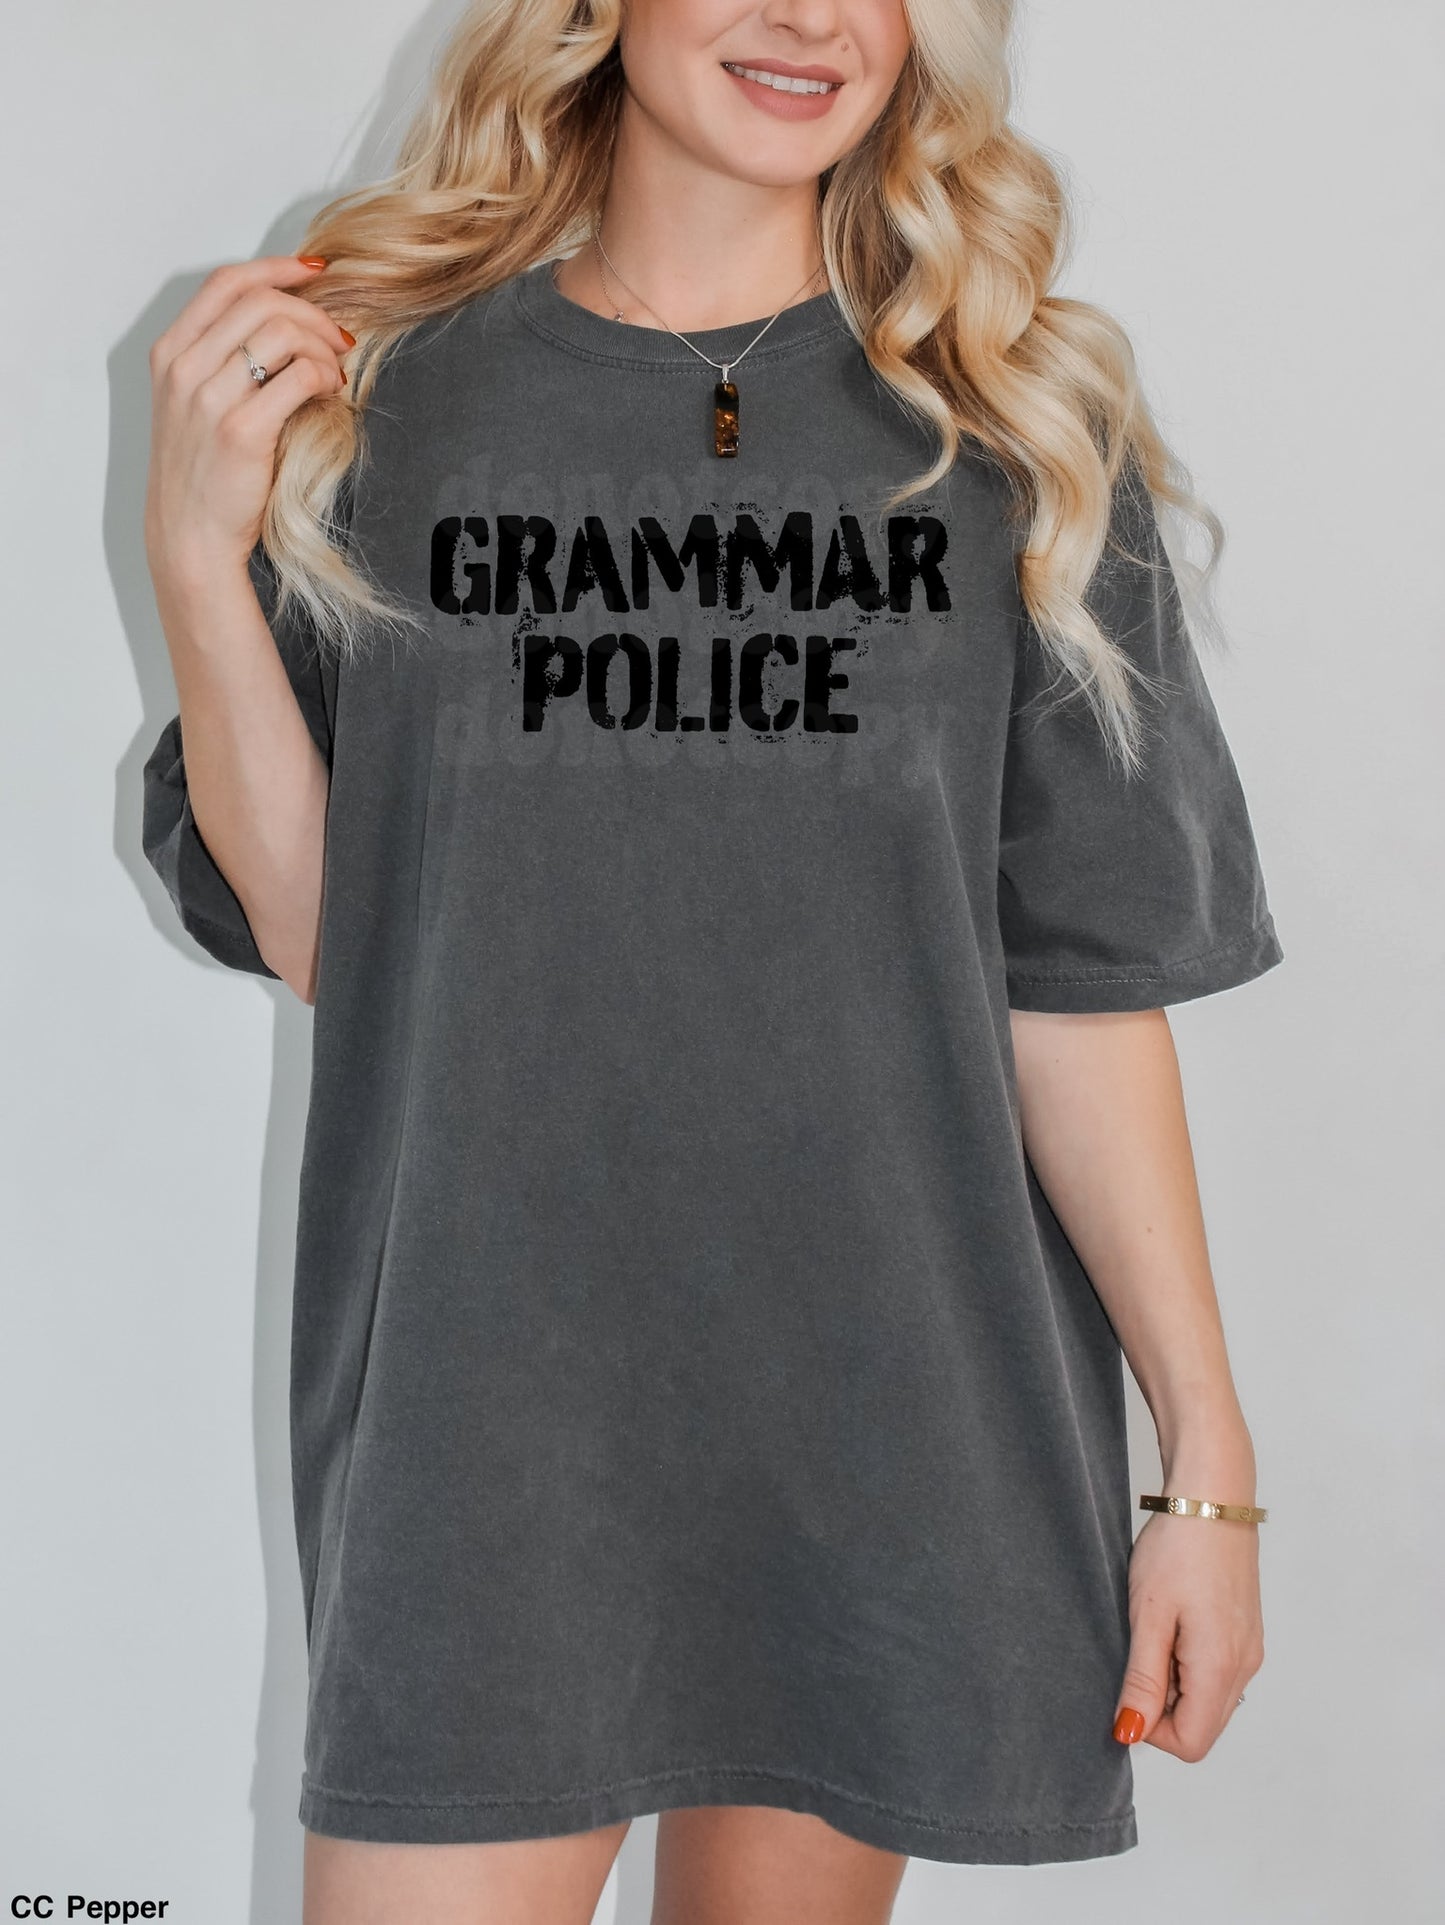 Grammar Police